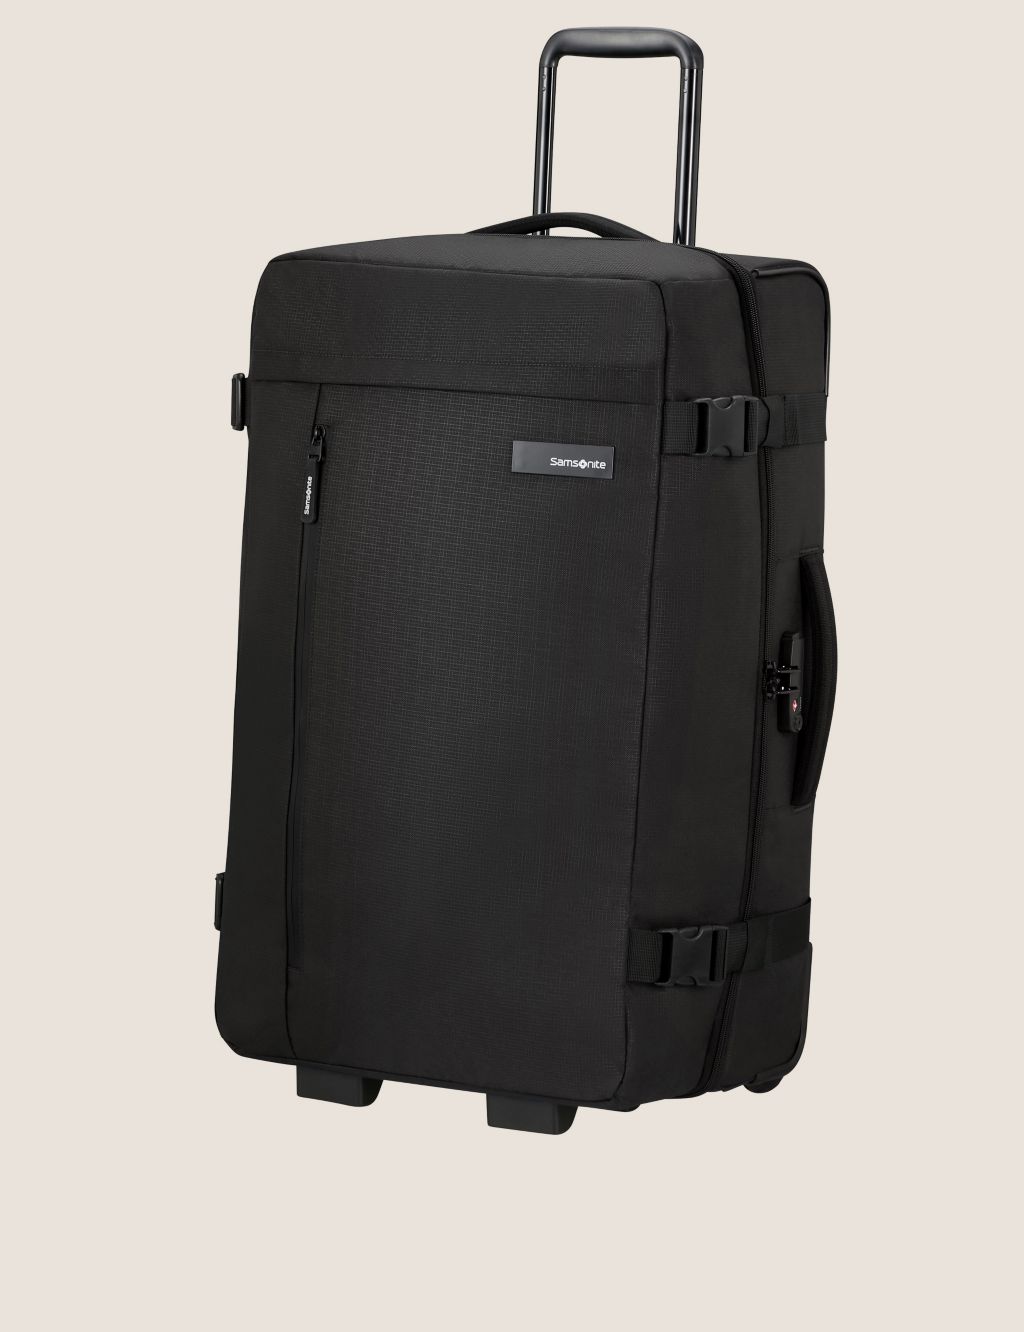 Roader 2 Wheel Soft Medium Suitcase